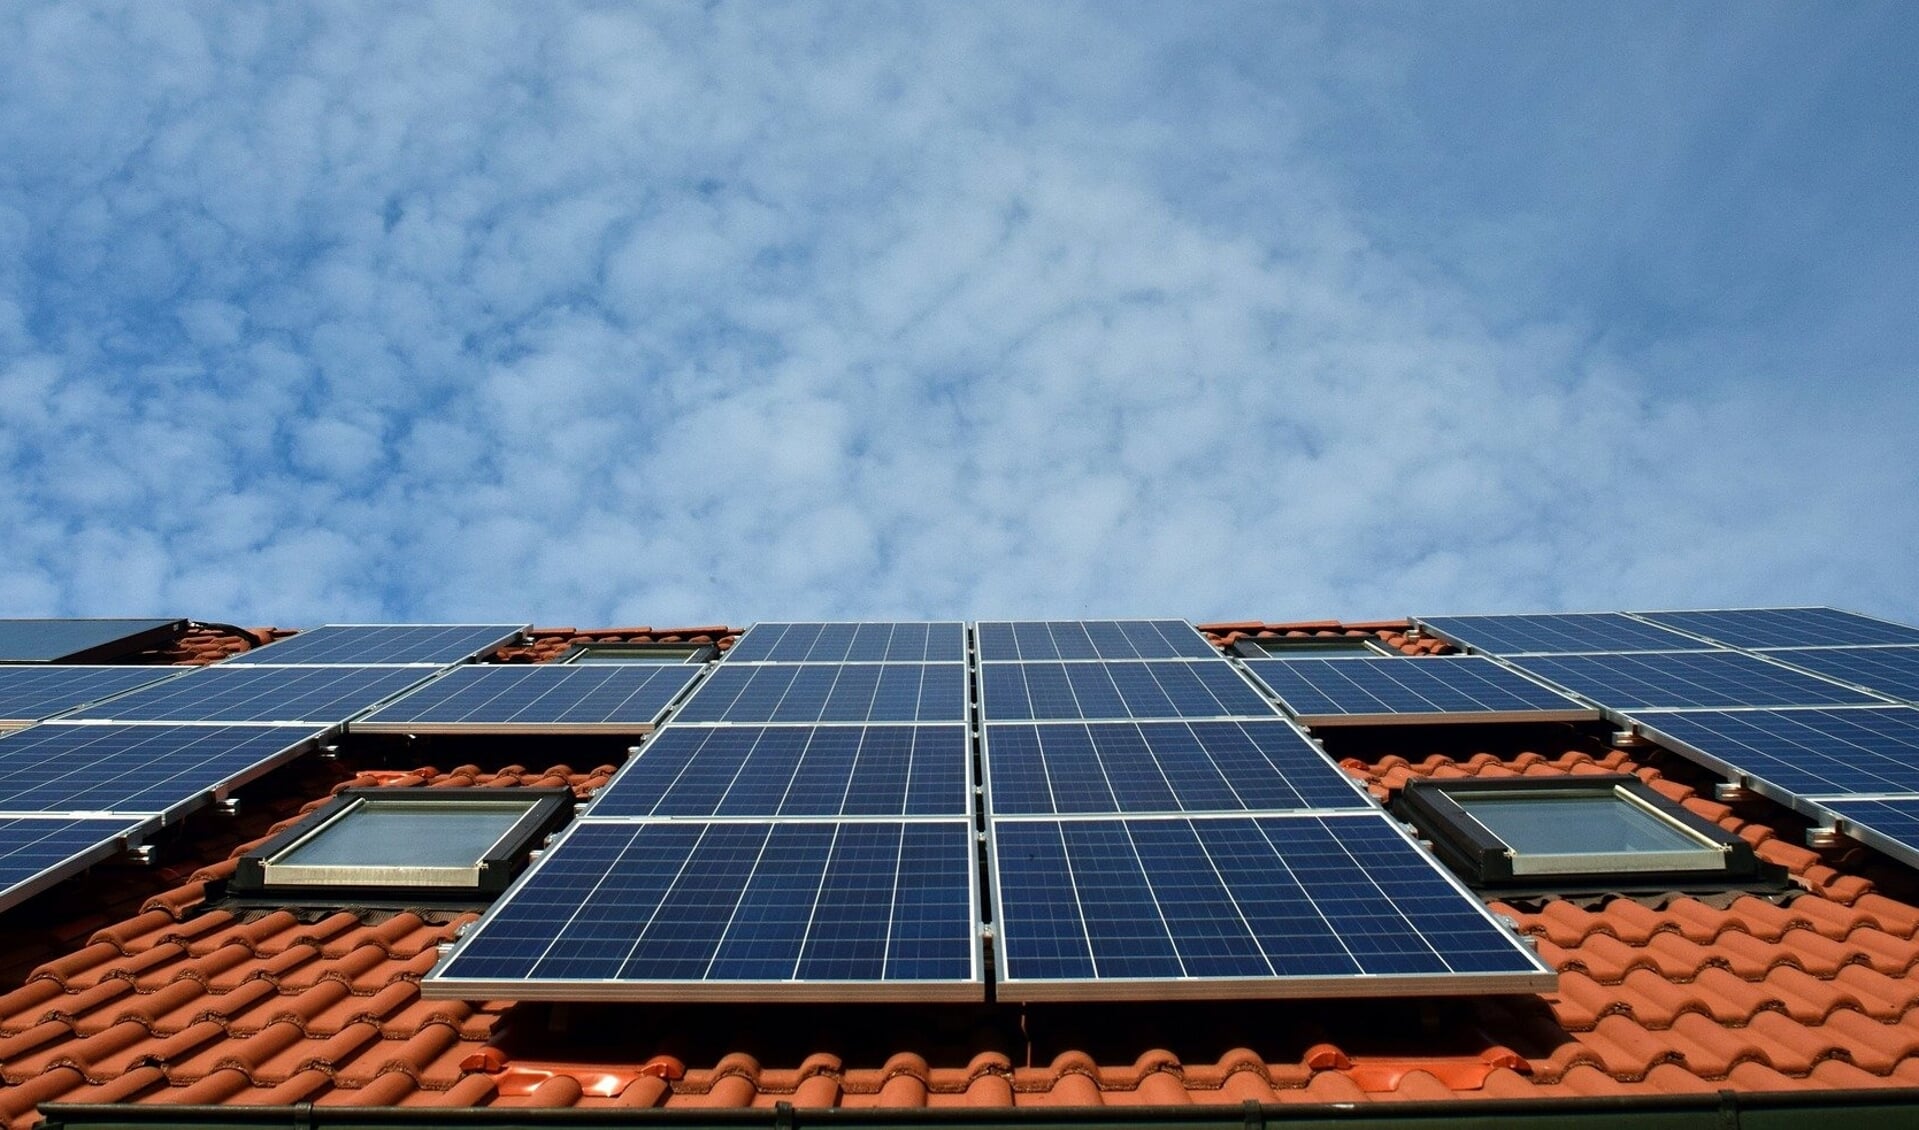 Zon-op-dak geniet in de RES 1.0 de voorkeur om voldoende zonne-energie op te wekken.